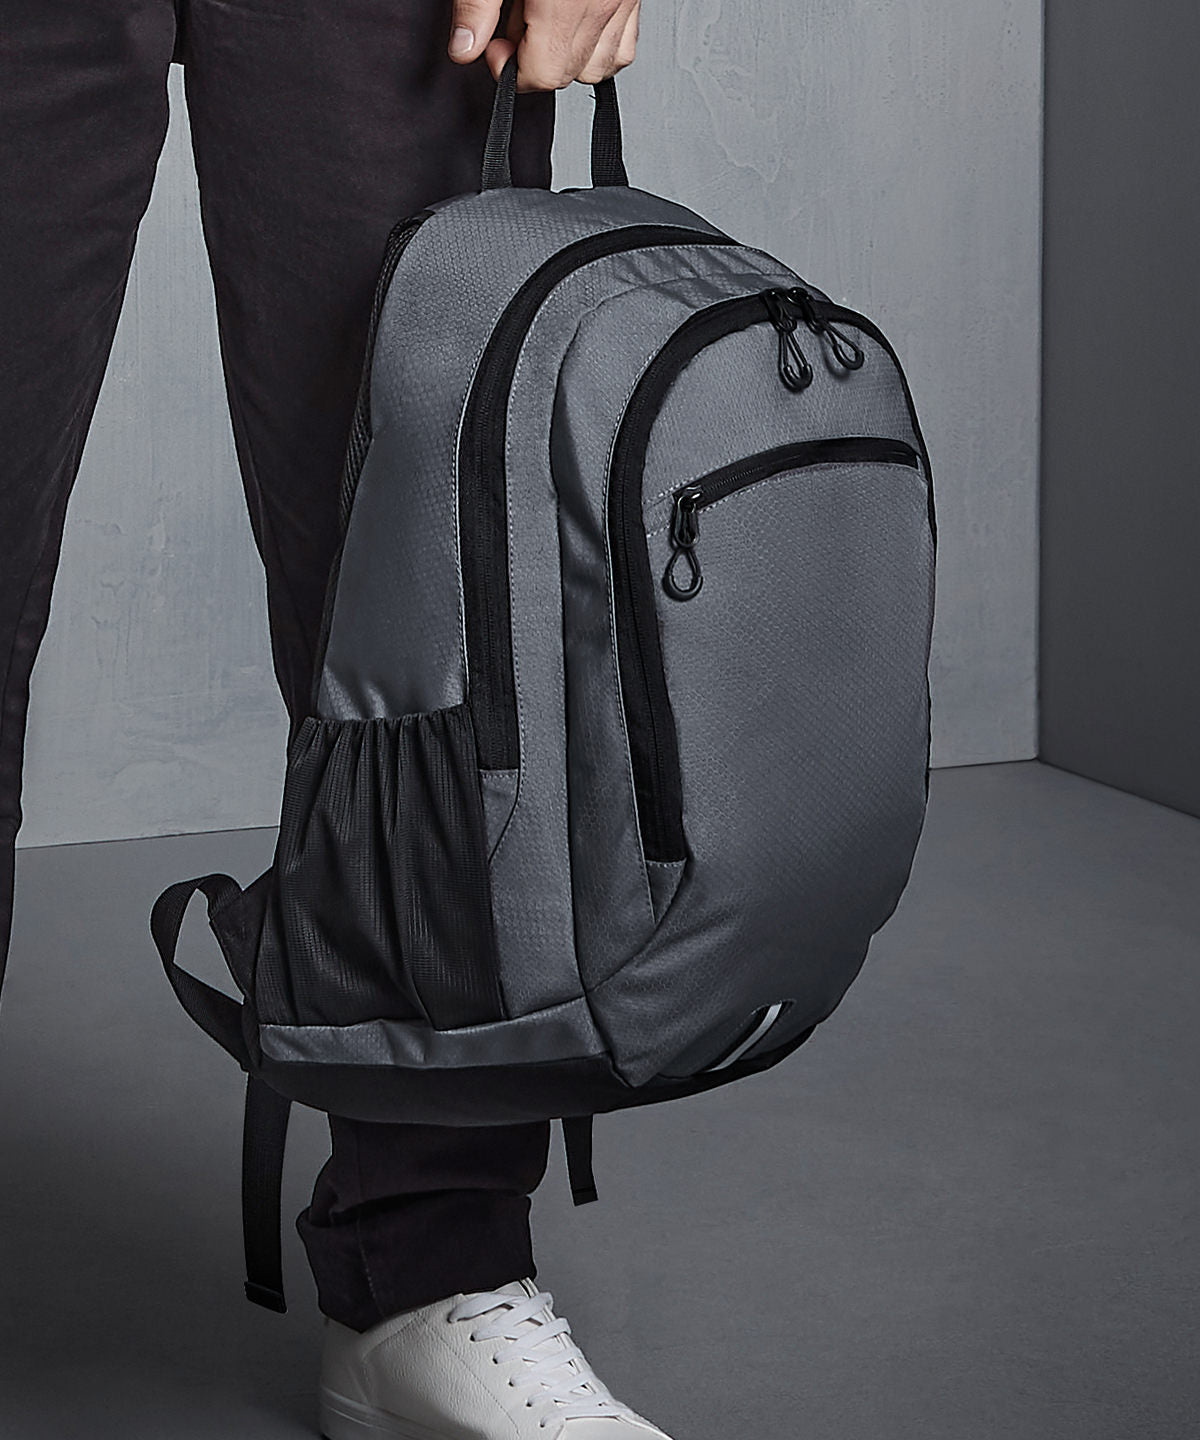 Töskur - Endeavour Backpack